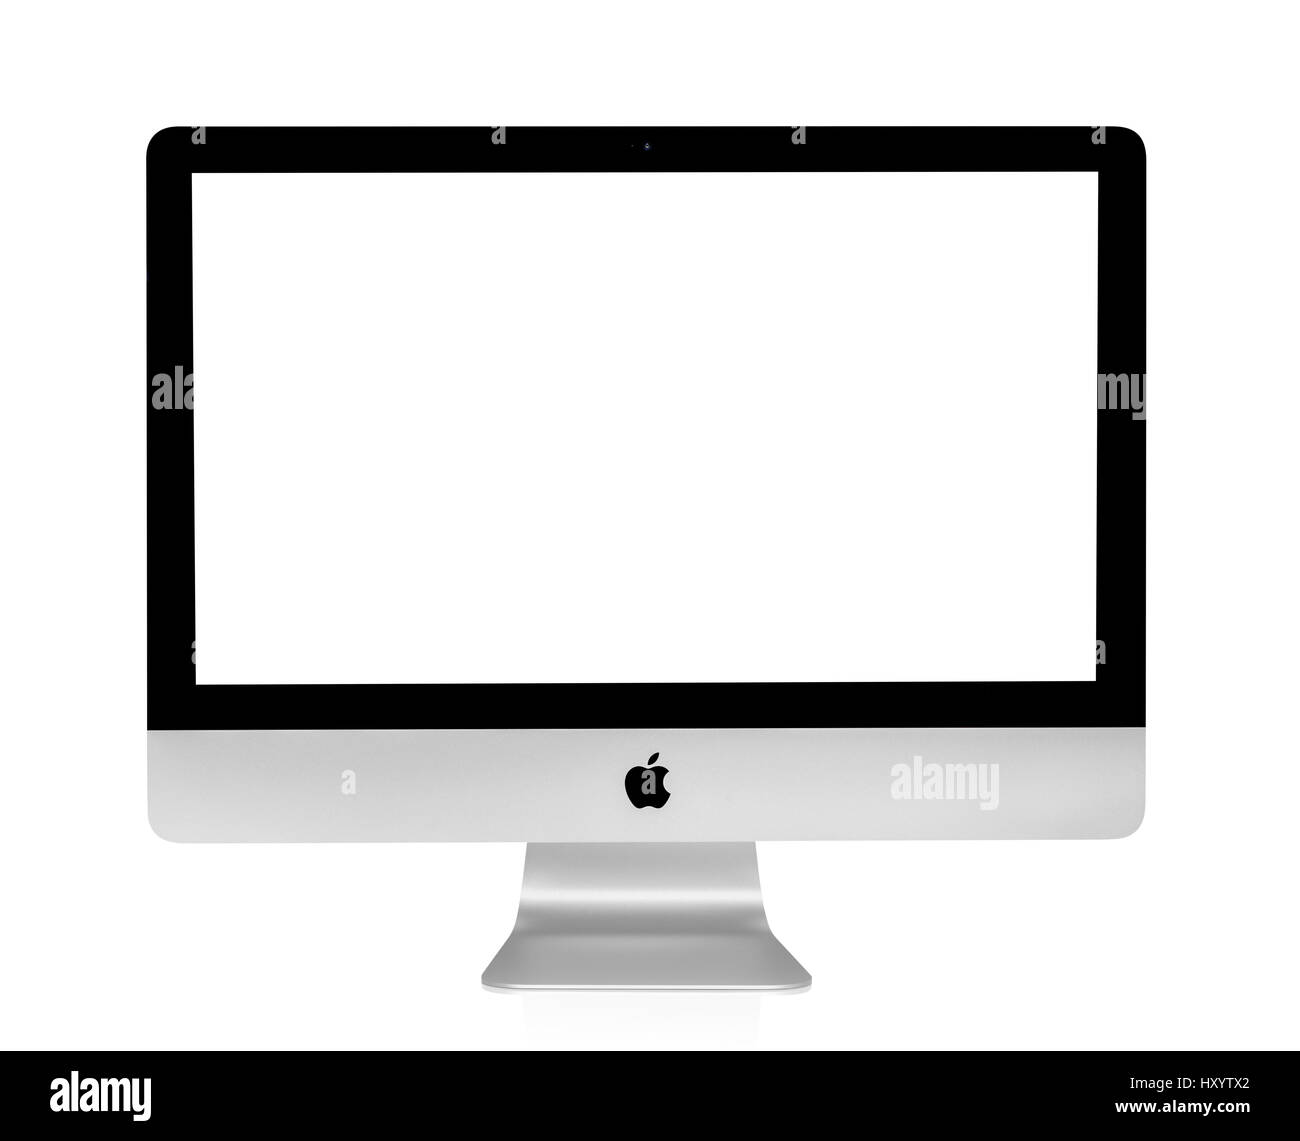 BANGKOK, THAILAND - 14. August 2015: Foto des neuen iMac 21.5 mit OS X Yosemite. iMac - Monoblock Serie von Personal Computern, erstellt von Apple Inc. Stockfoto